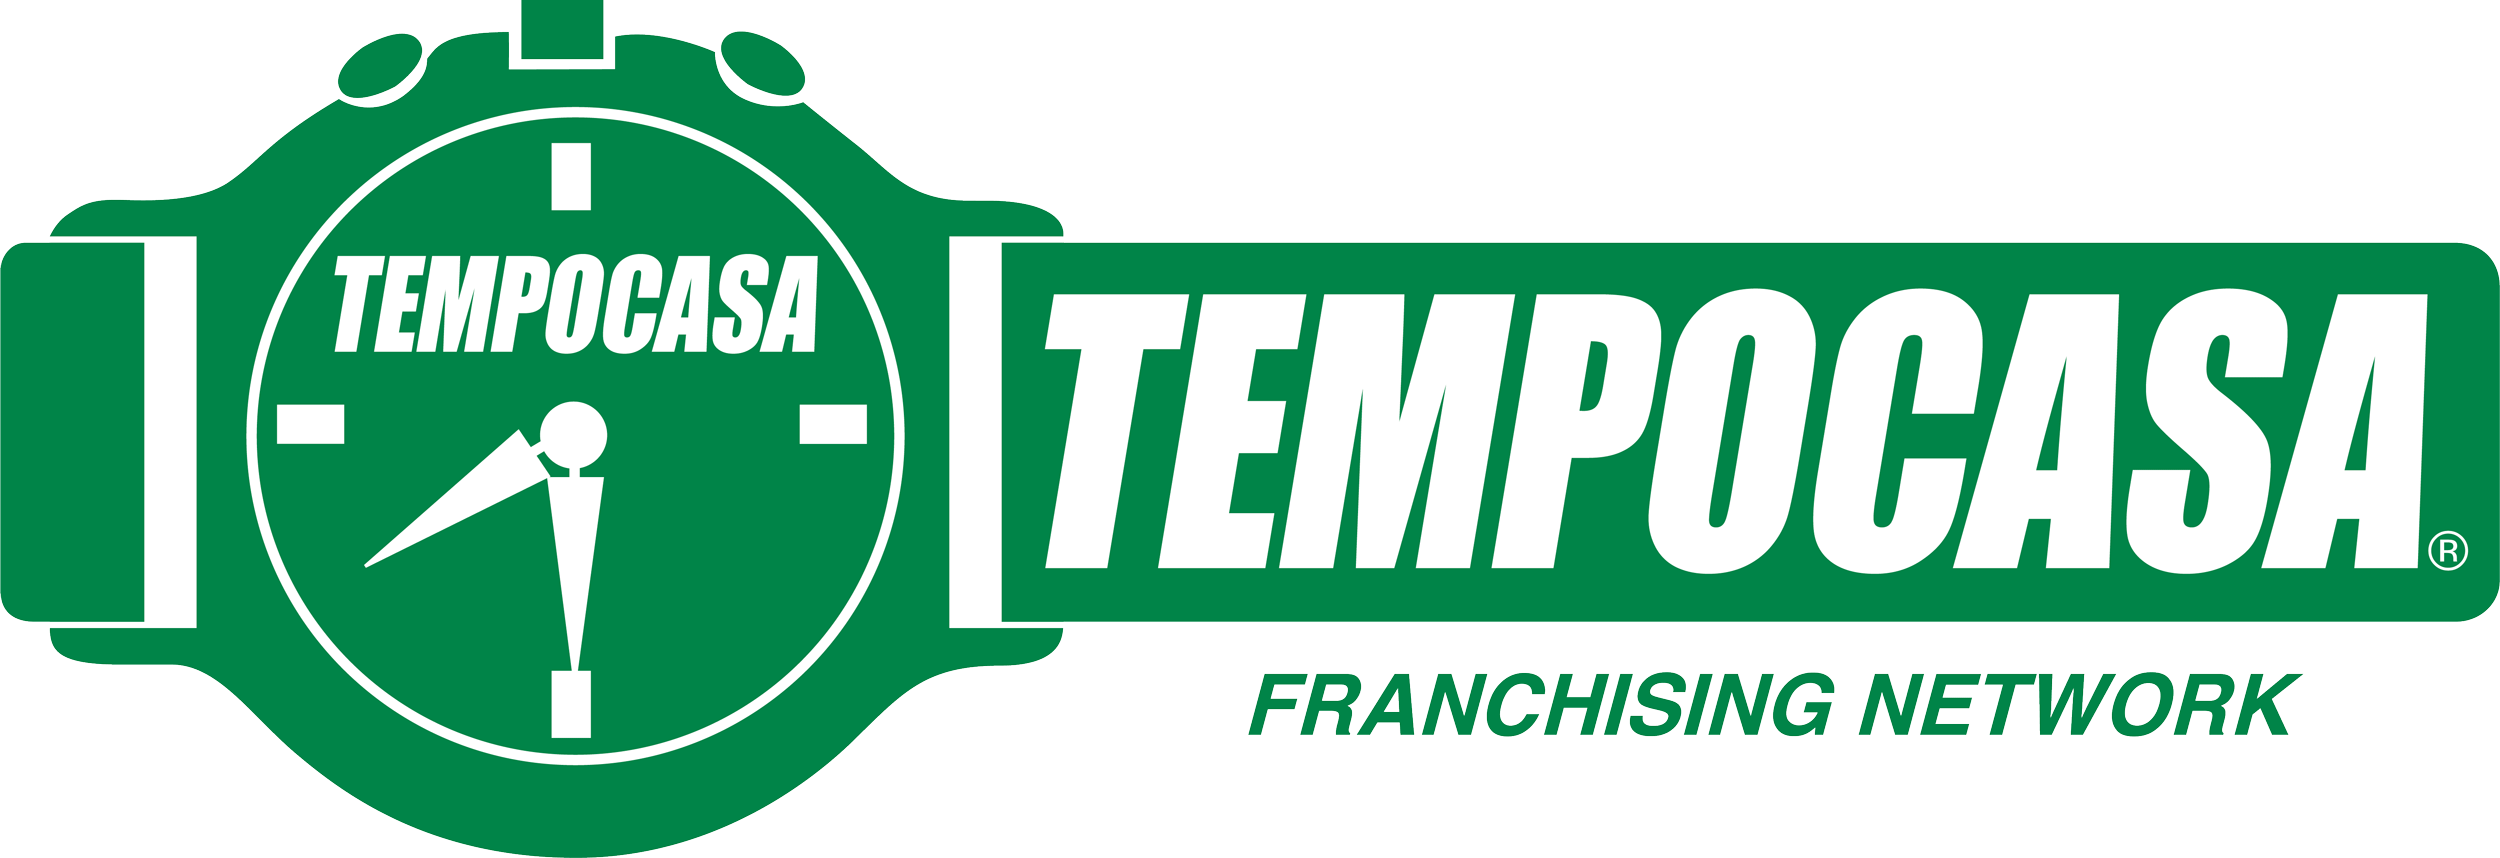 Monopoli - Tempocasa